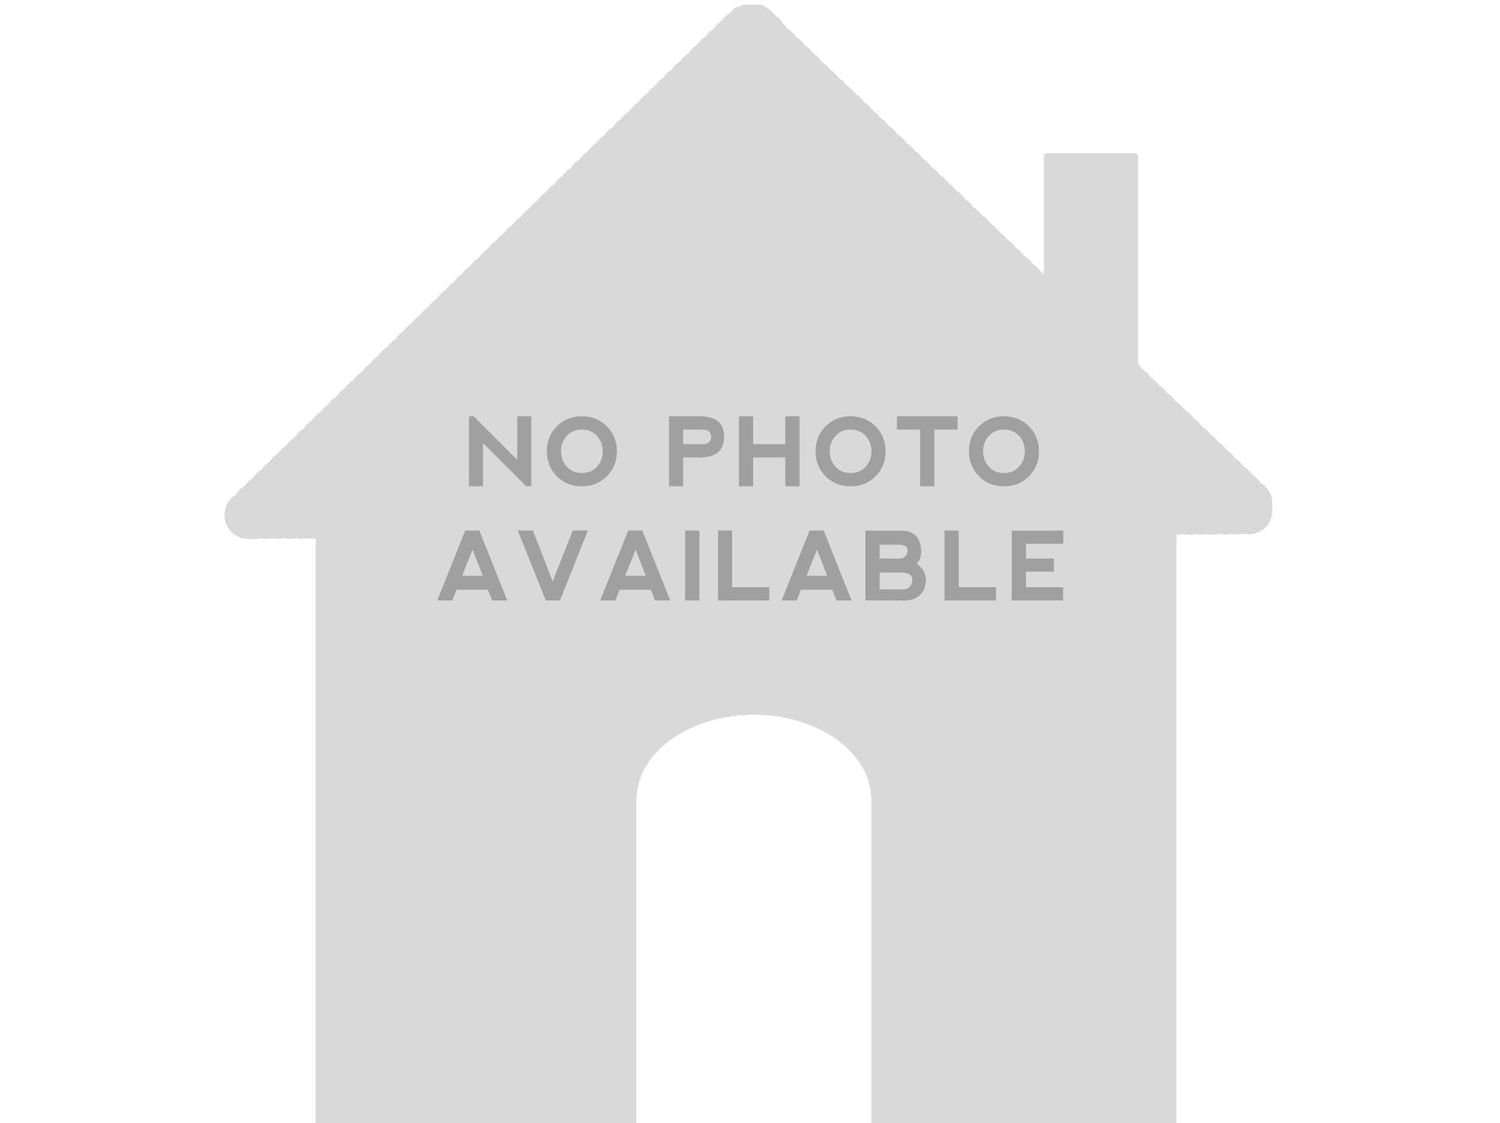 Real estate property located at 3865 Coquina Way, Broward County, ISLES AT WESTON, Weston, FL